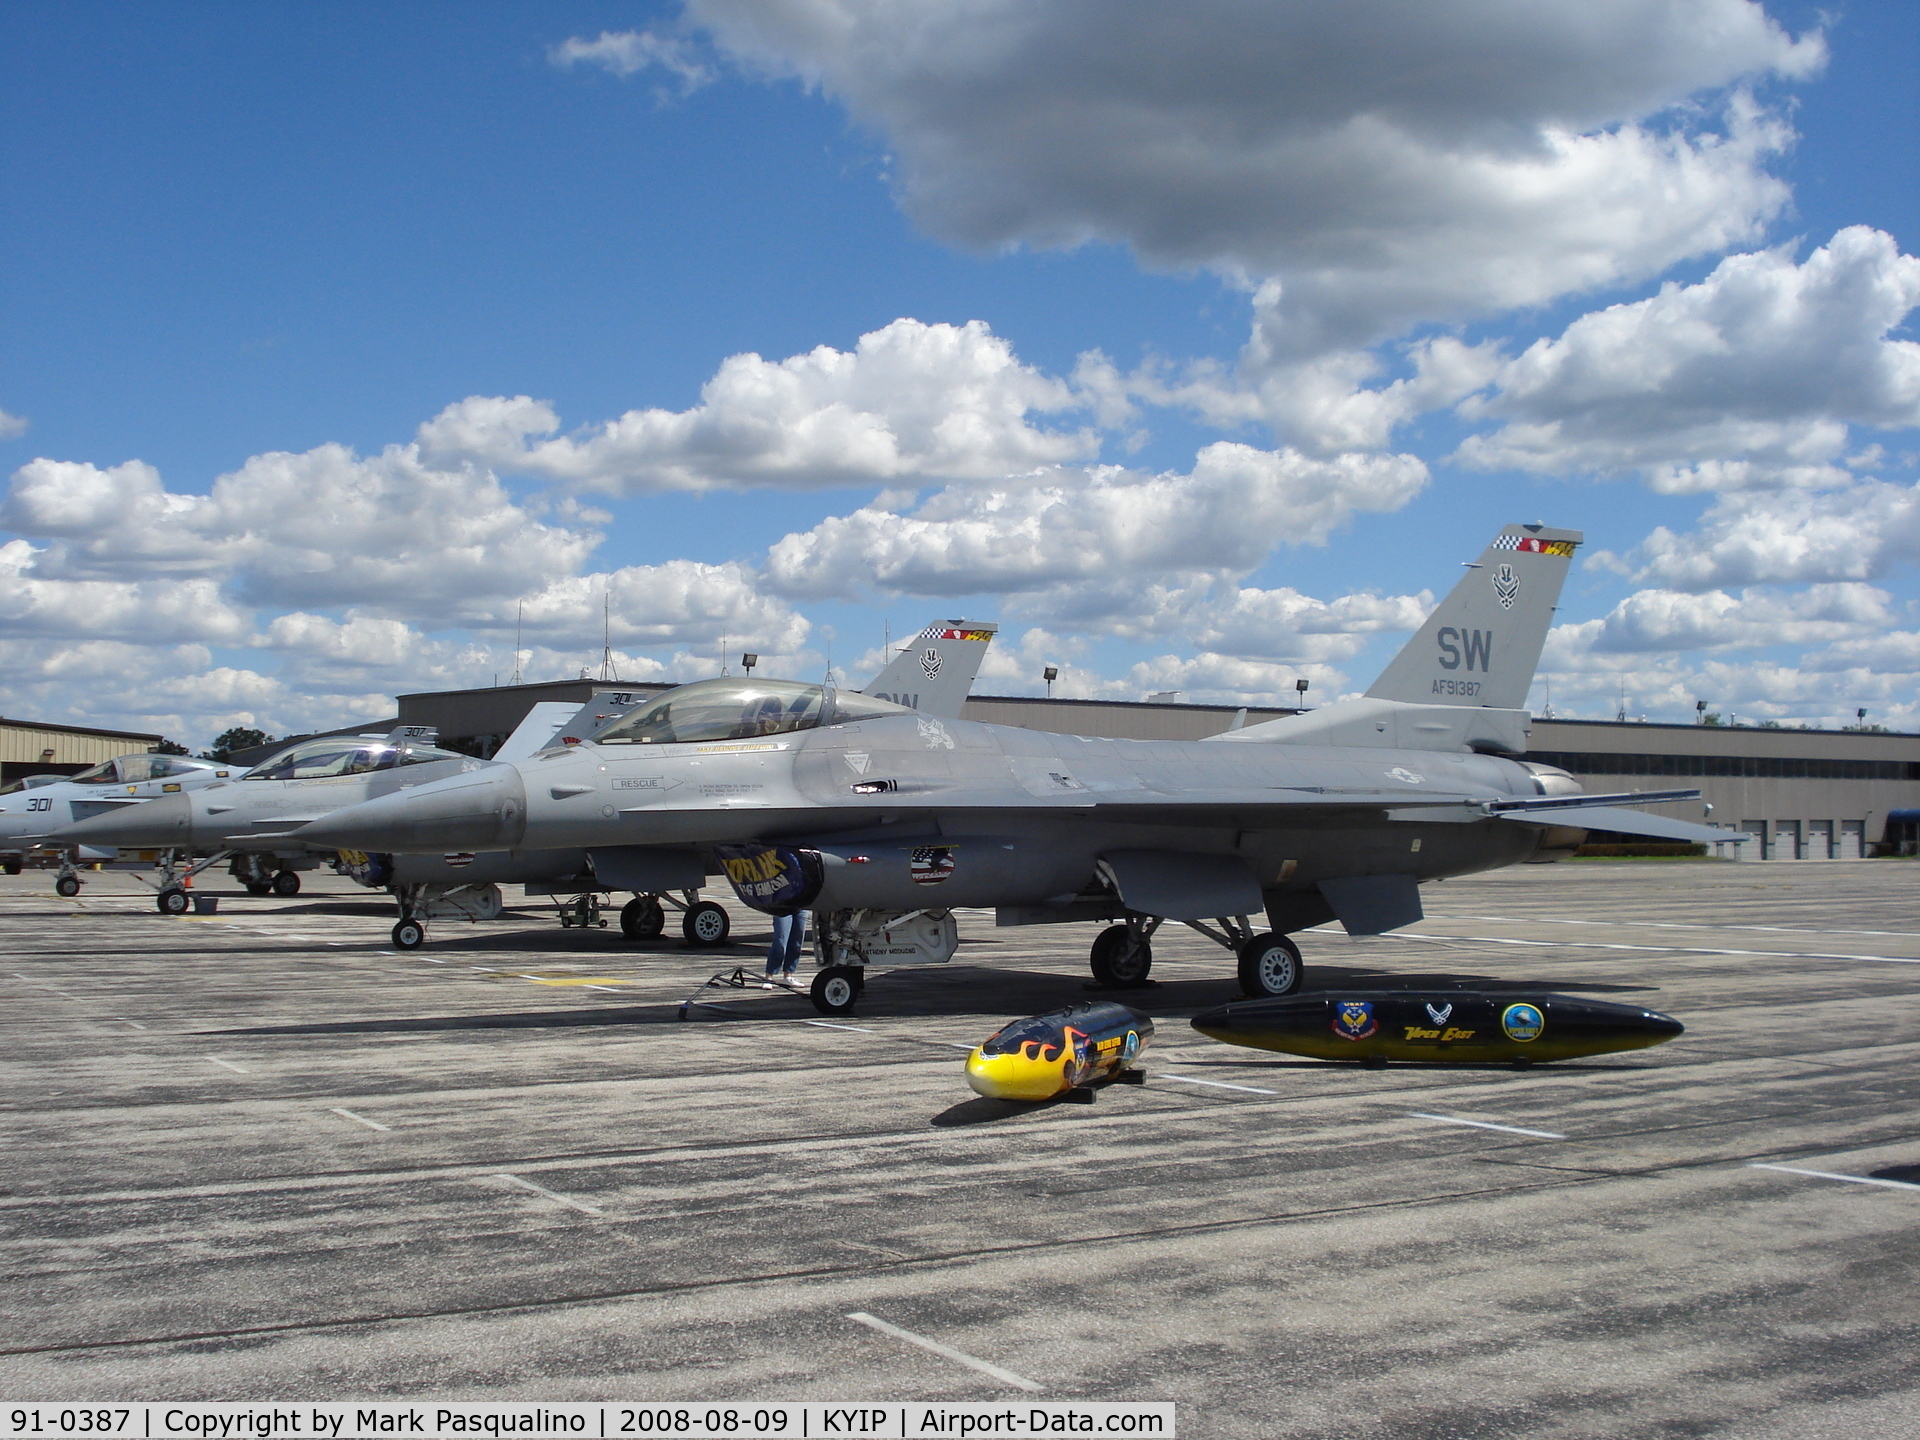 91-0387, 1991 General Dynamics F-16CM Fighting Falcon C/N CC-85, F-16C